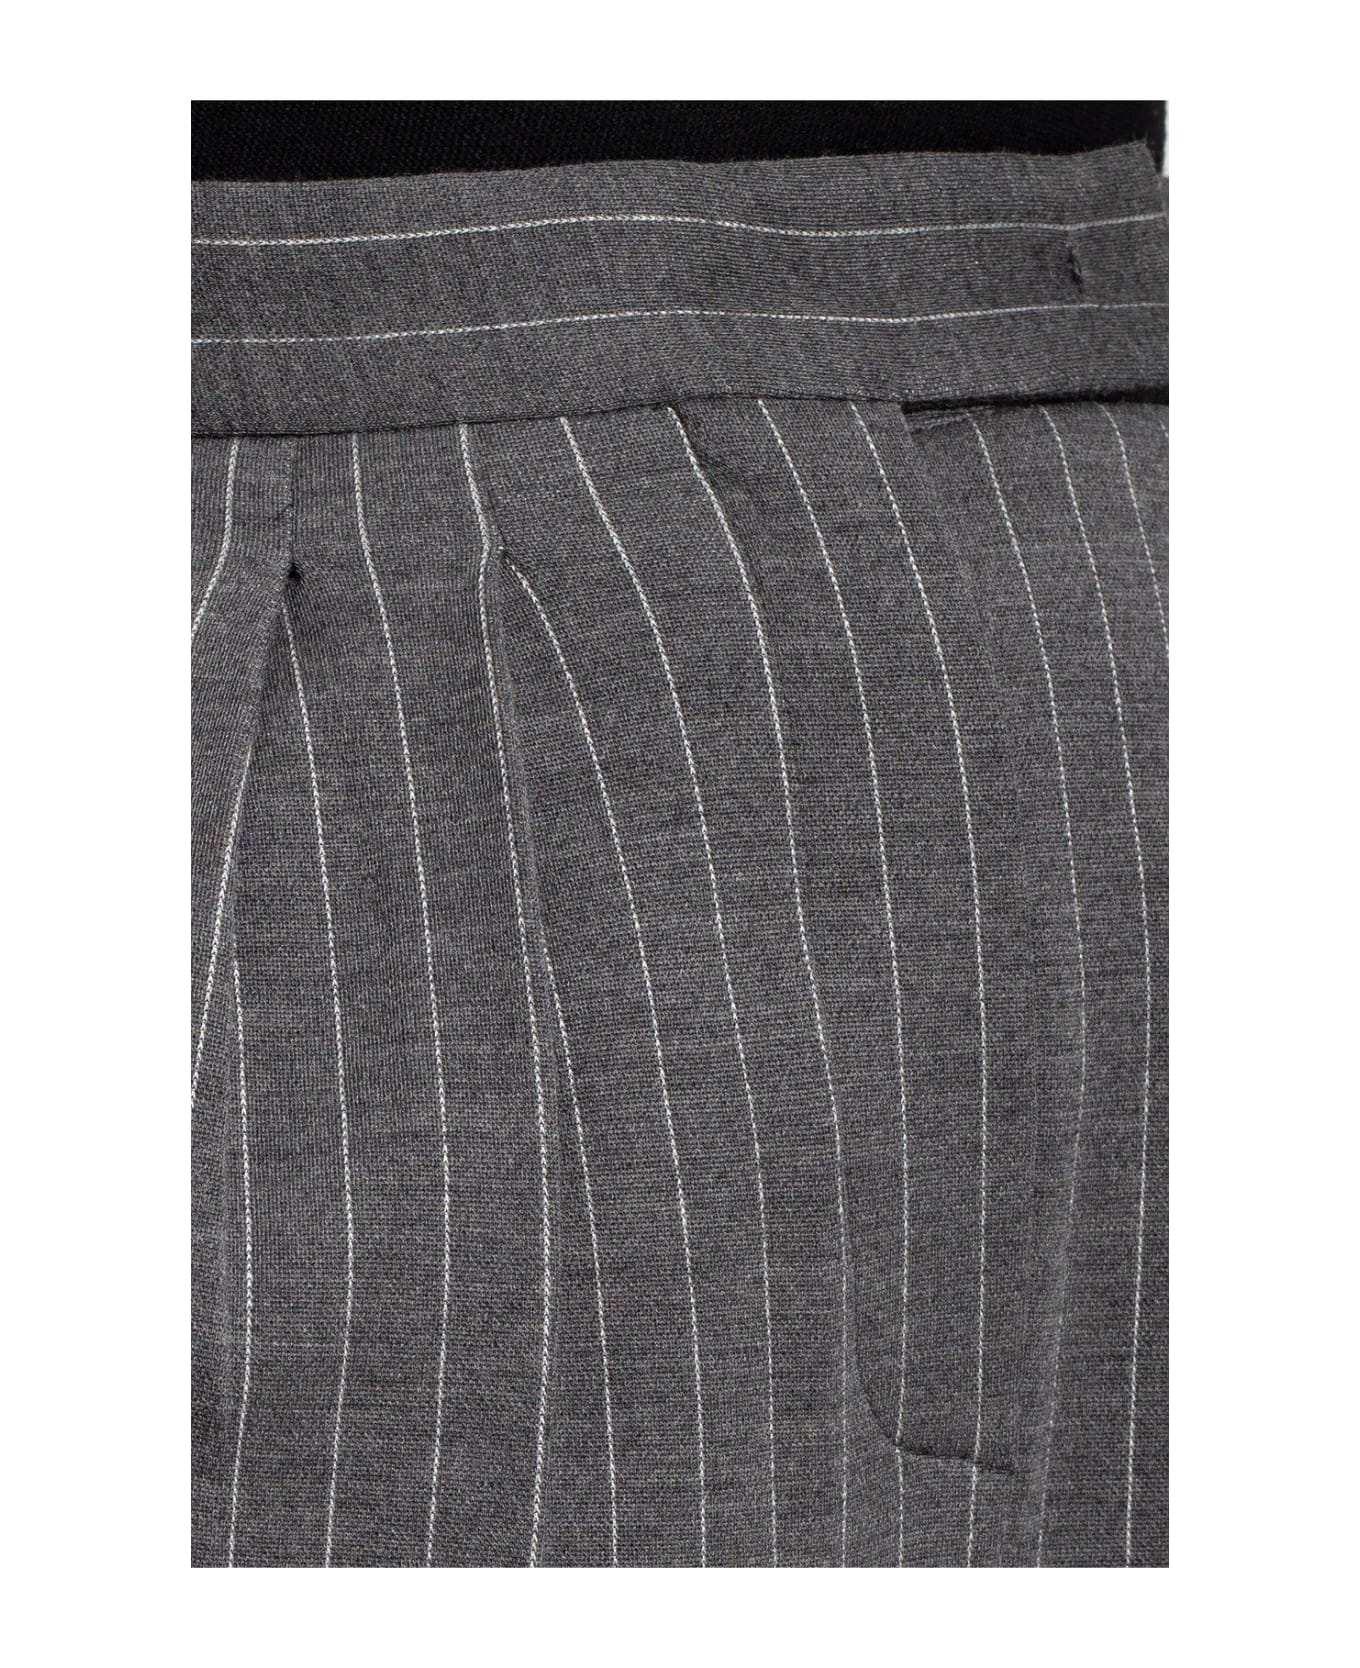 Max Mara Pinstriped Trousers - Medium grey